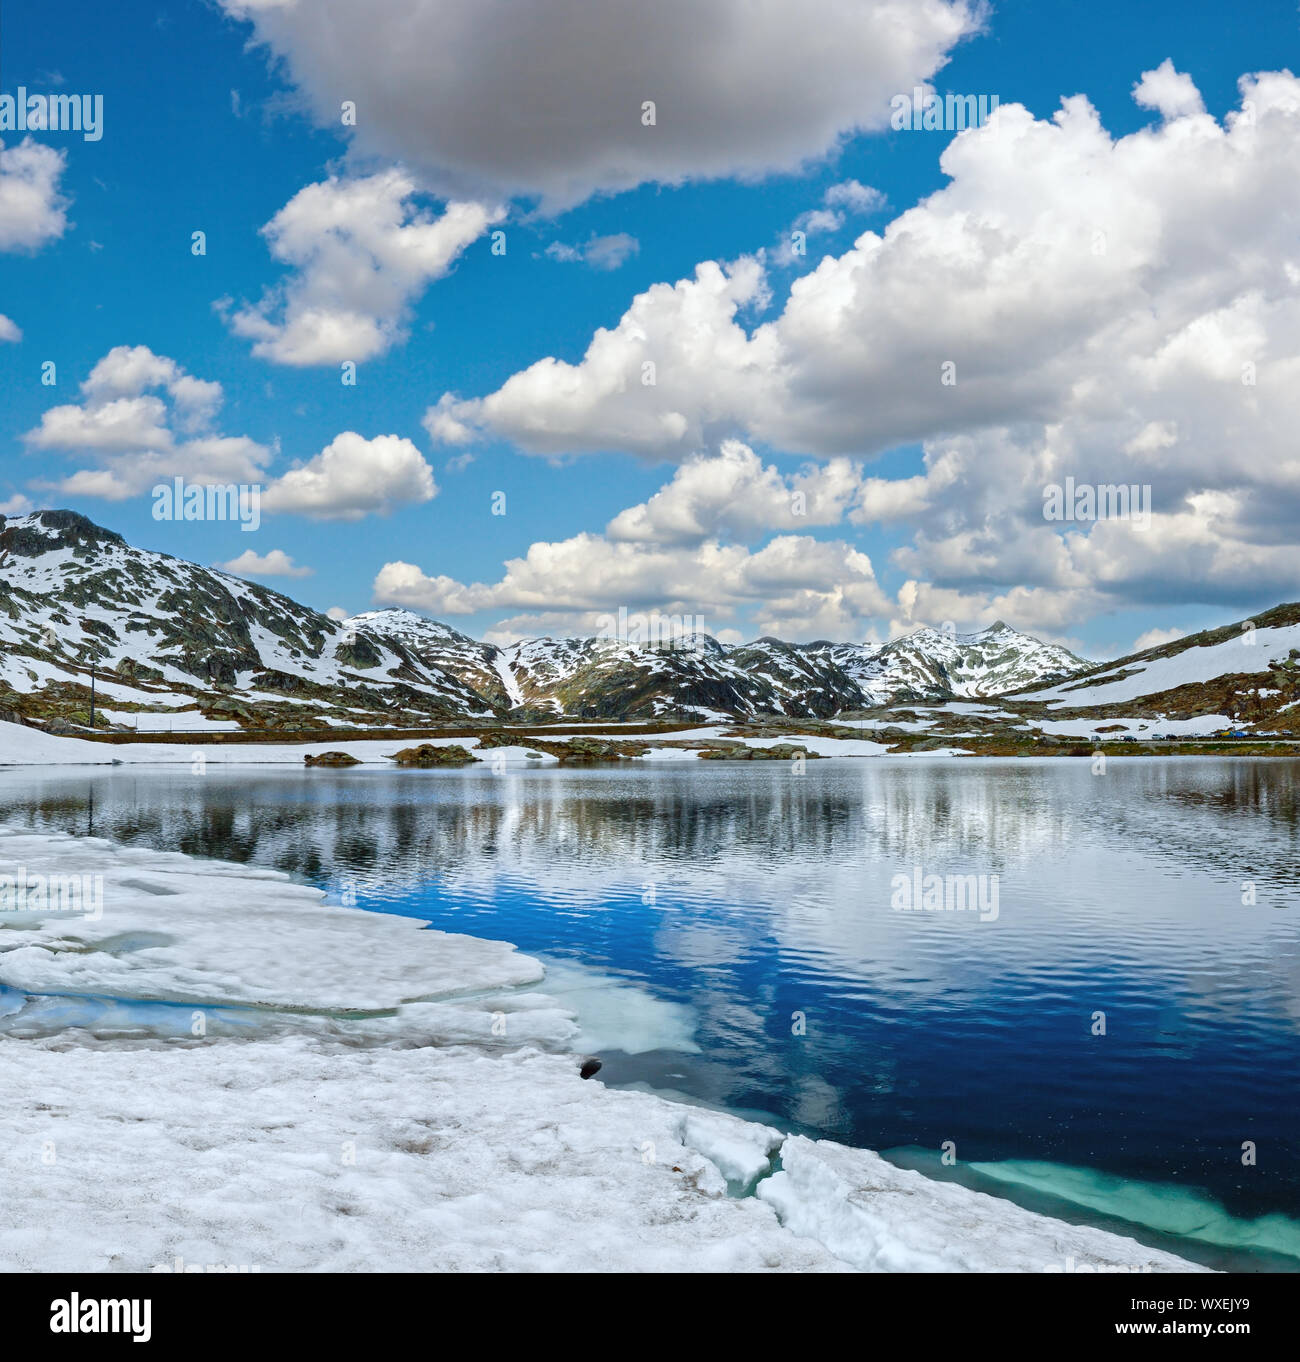 Verano lago de montaña de los Alpes, Suiza Foto de stock